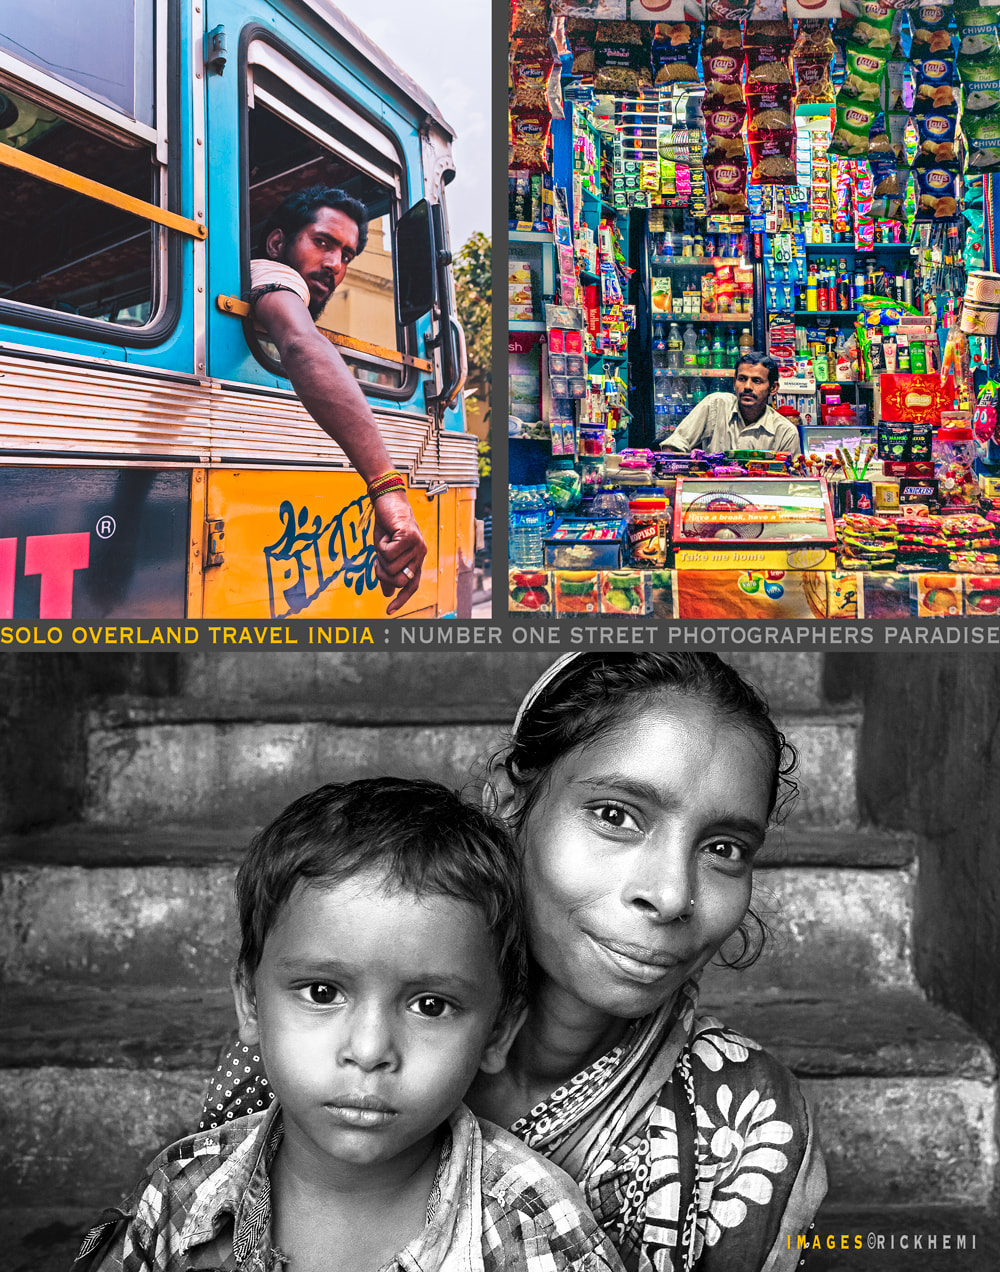 solo overland travel India, street photographers paradise India, images by Rick Hemi